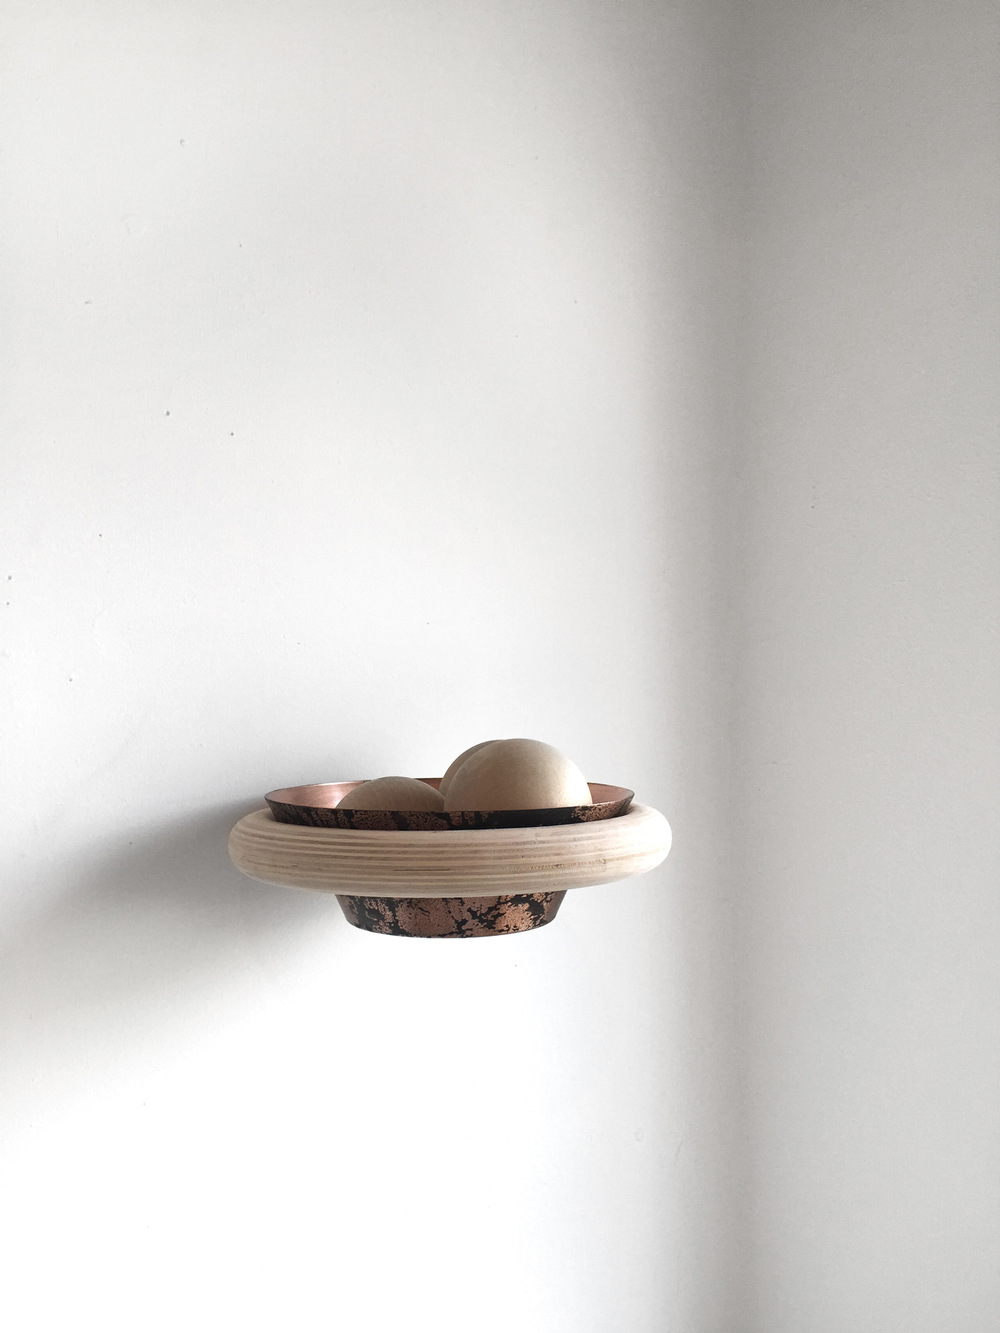 Wall mounted wood and aluminium bowl